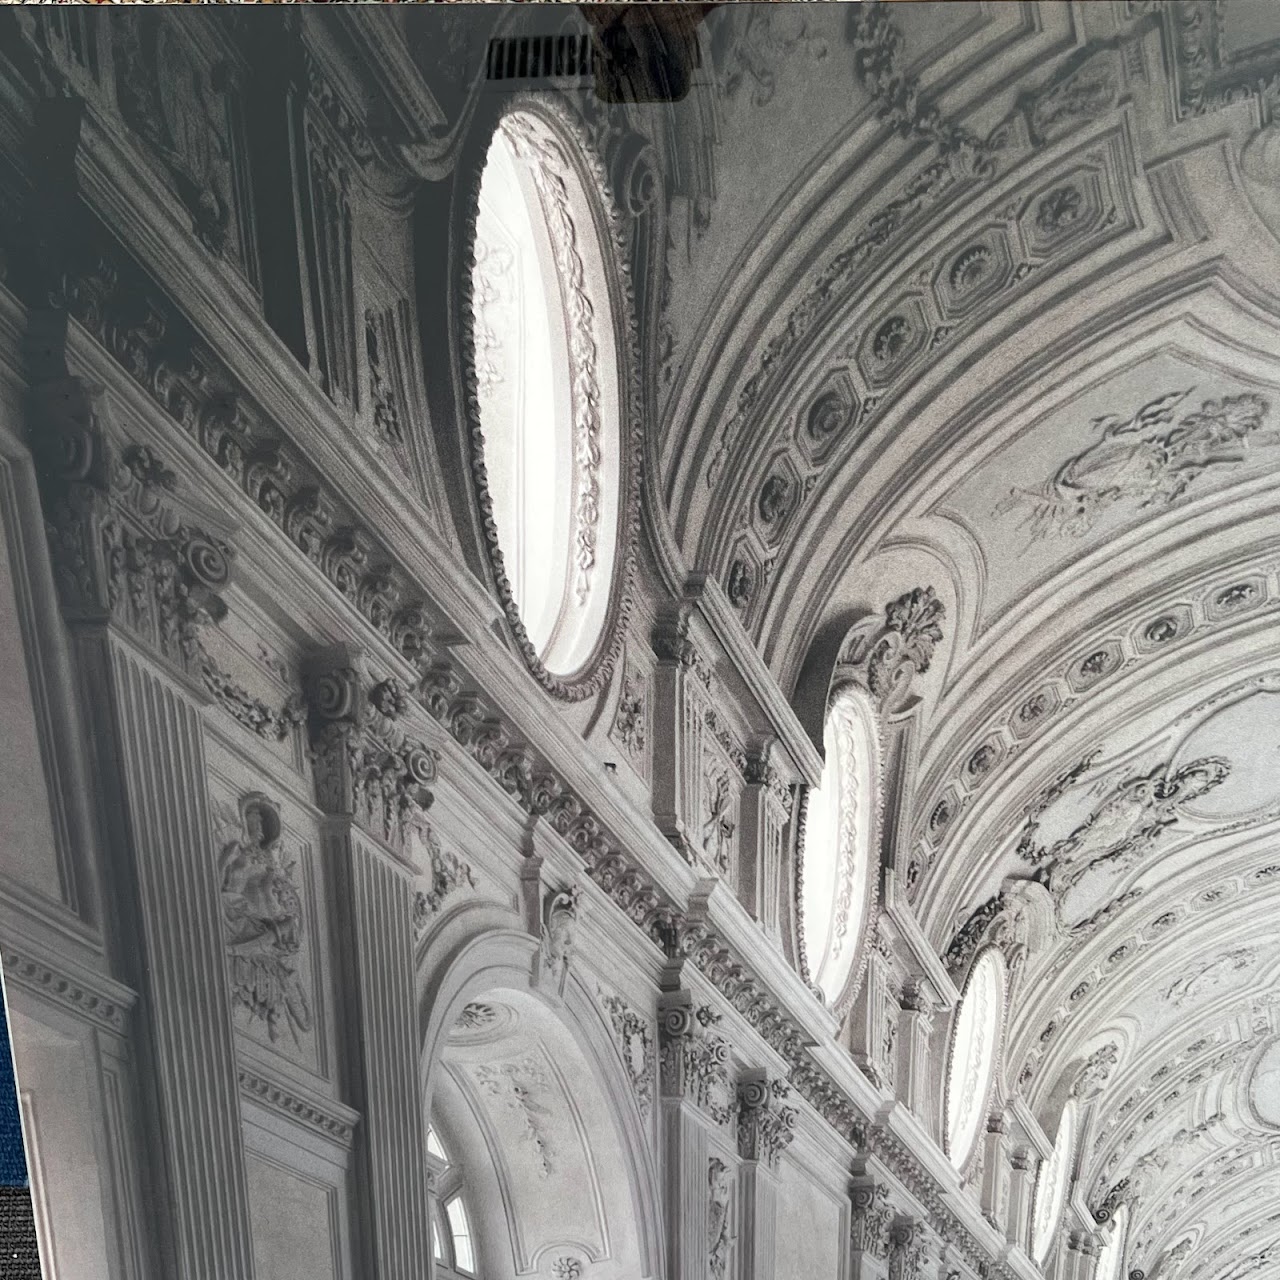 Massimo Listri 'Reggia di Venaria, Galleria di Diana' Signed Large Scale Architectural Photograph